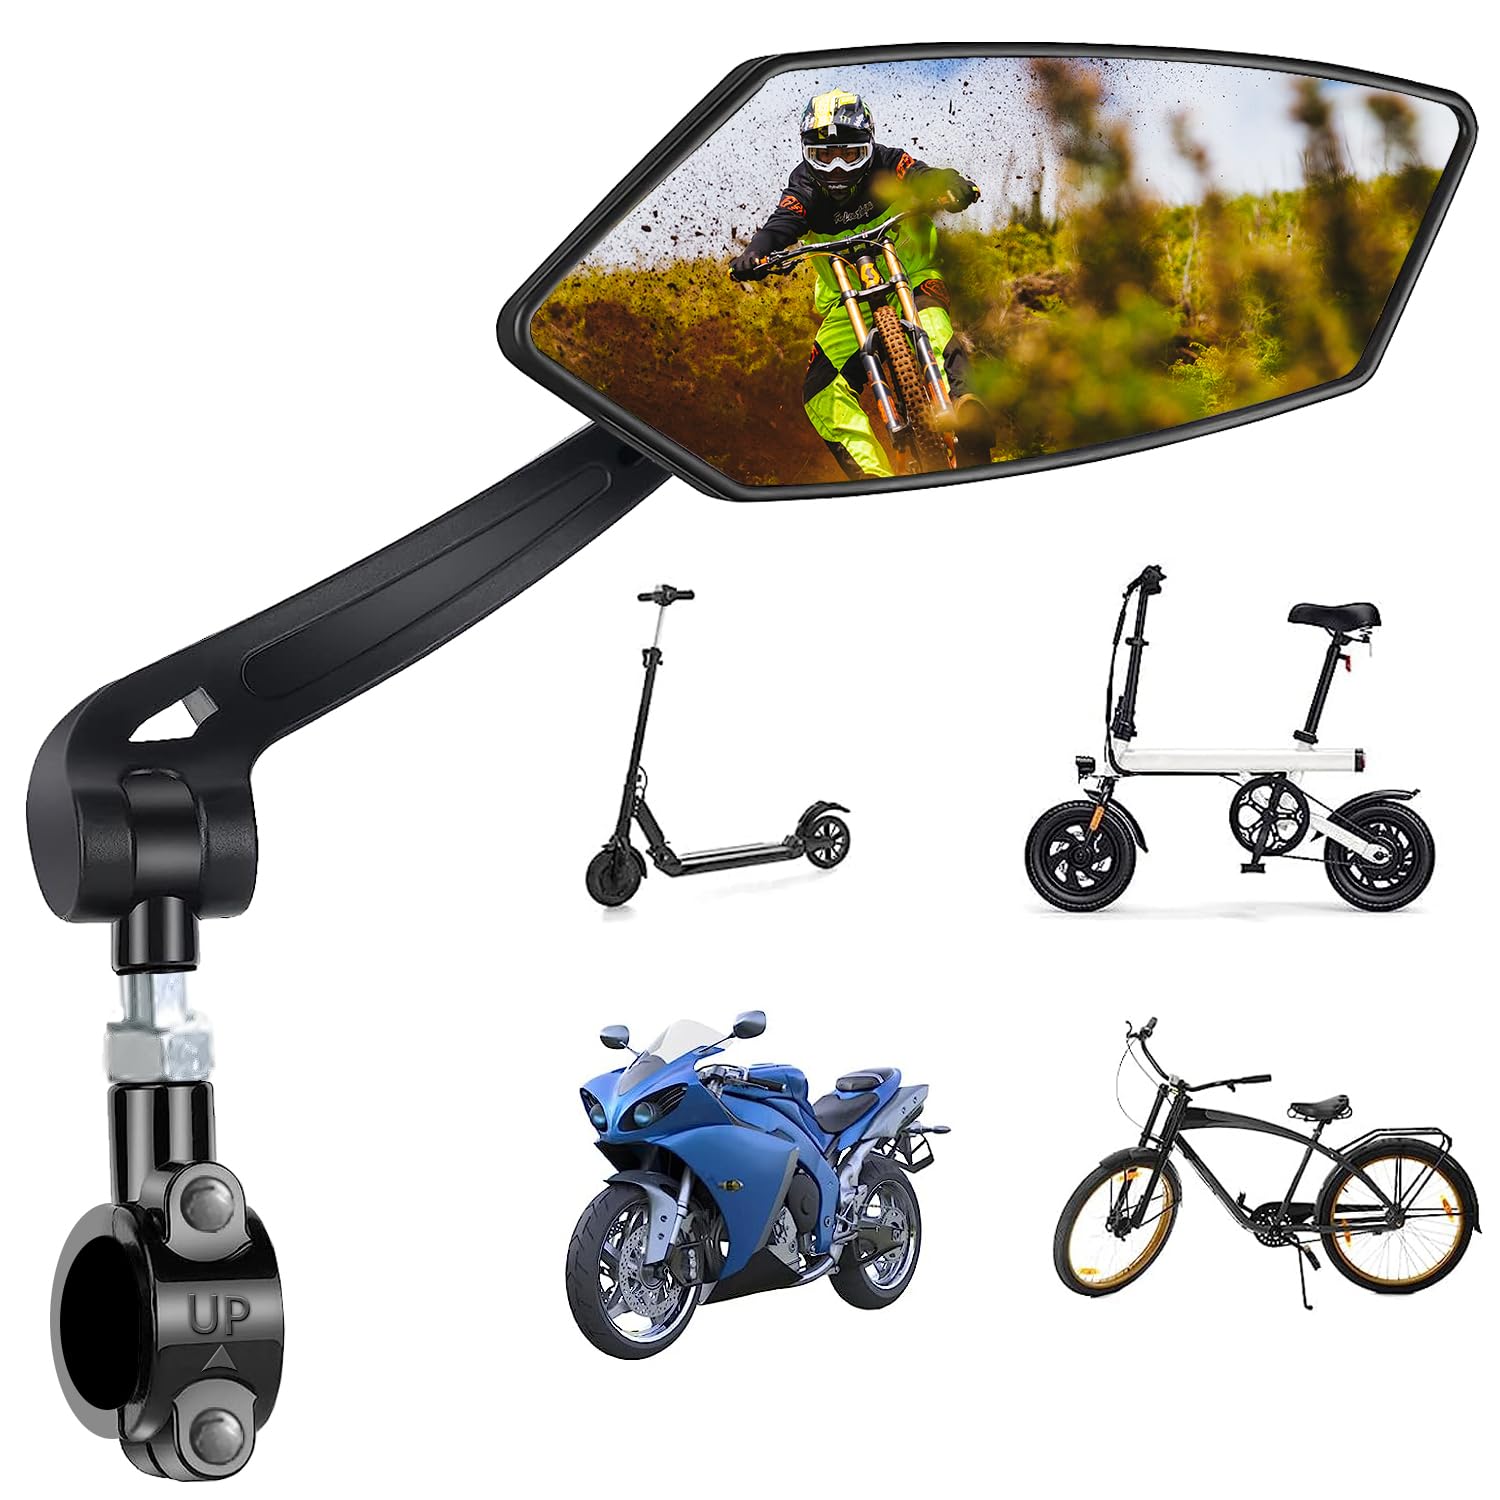 Fahrradspiegel für E-Bike Rechts Fahrrad Rückspiegel HD 360° Drehbarer Schlagfestes Spiegel Klappbar Lenkerspiegel Fahrradrückspiegel für EBike MTB Mountainbike Rennräd Lenker Zubehör Bike Mirror von Favuit